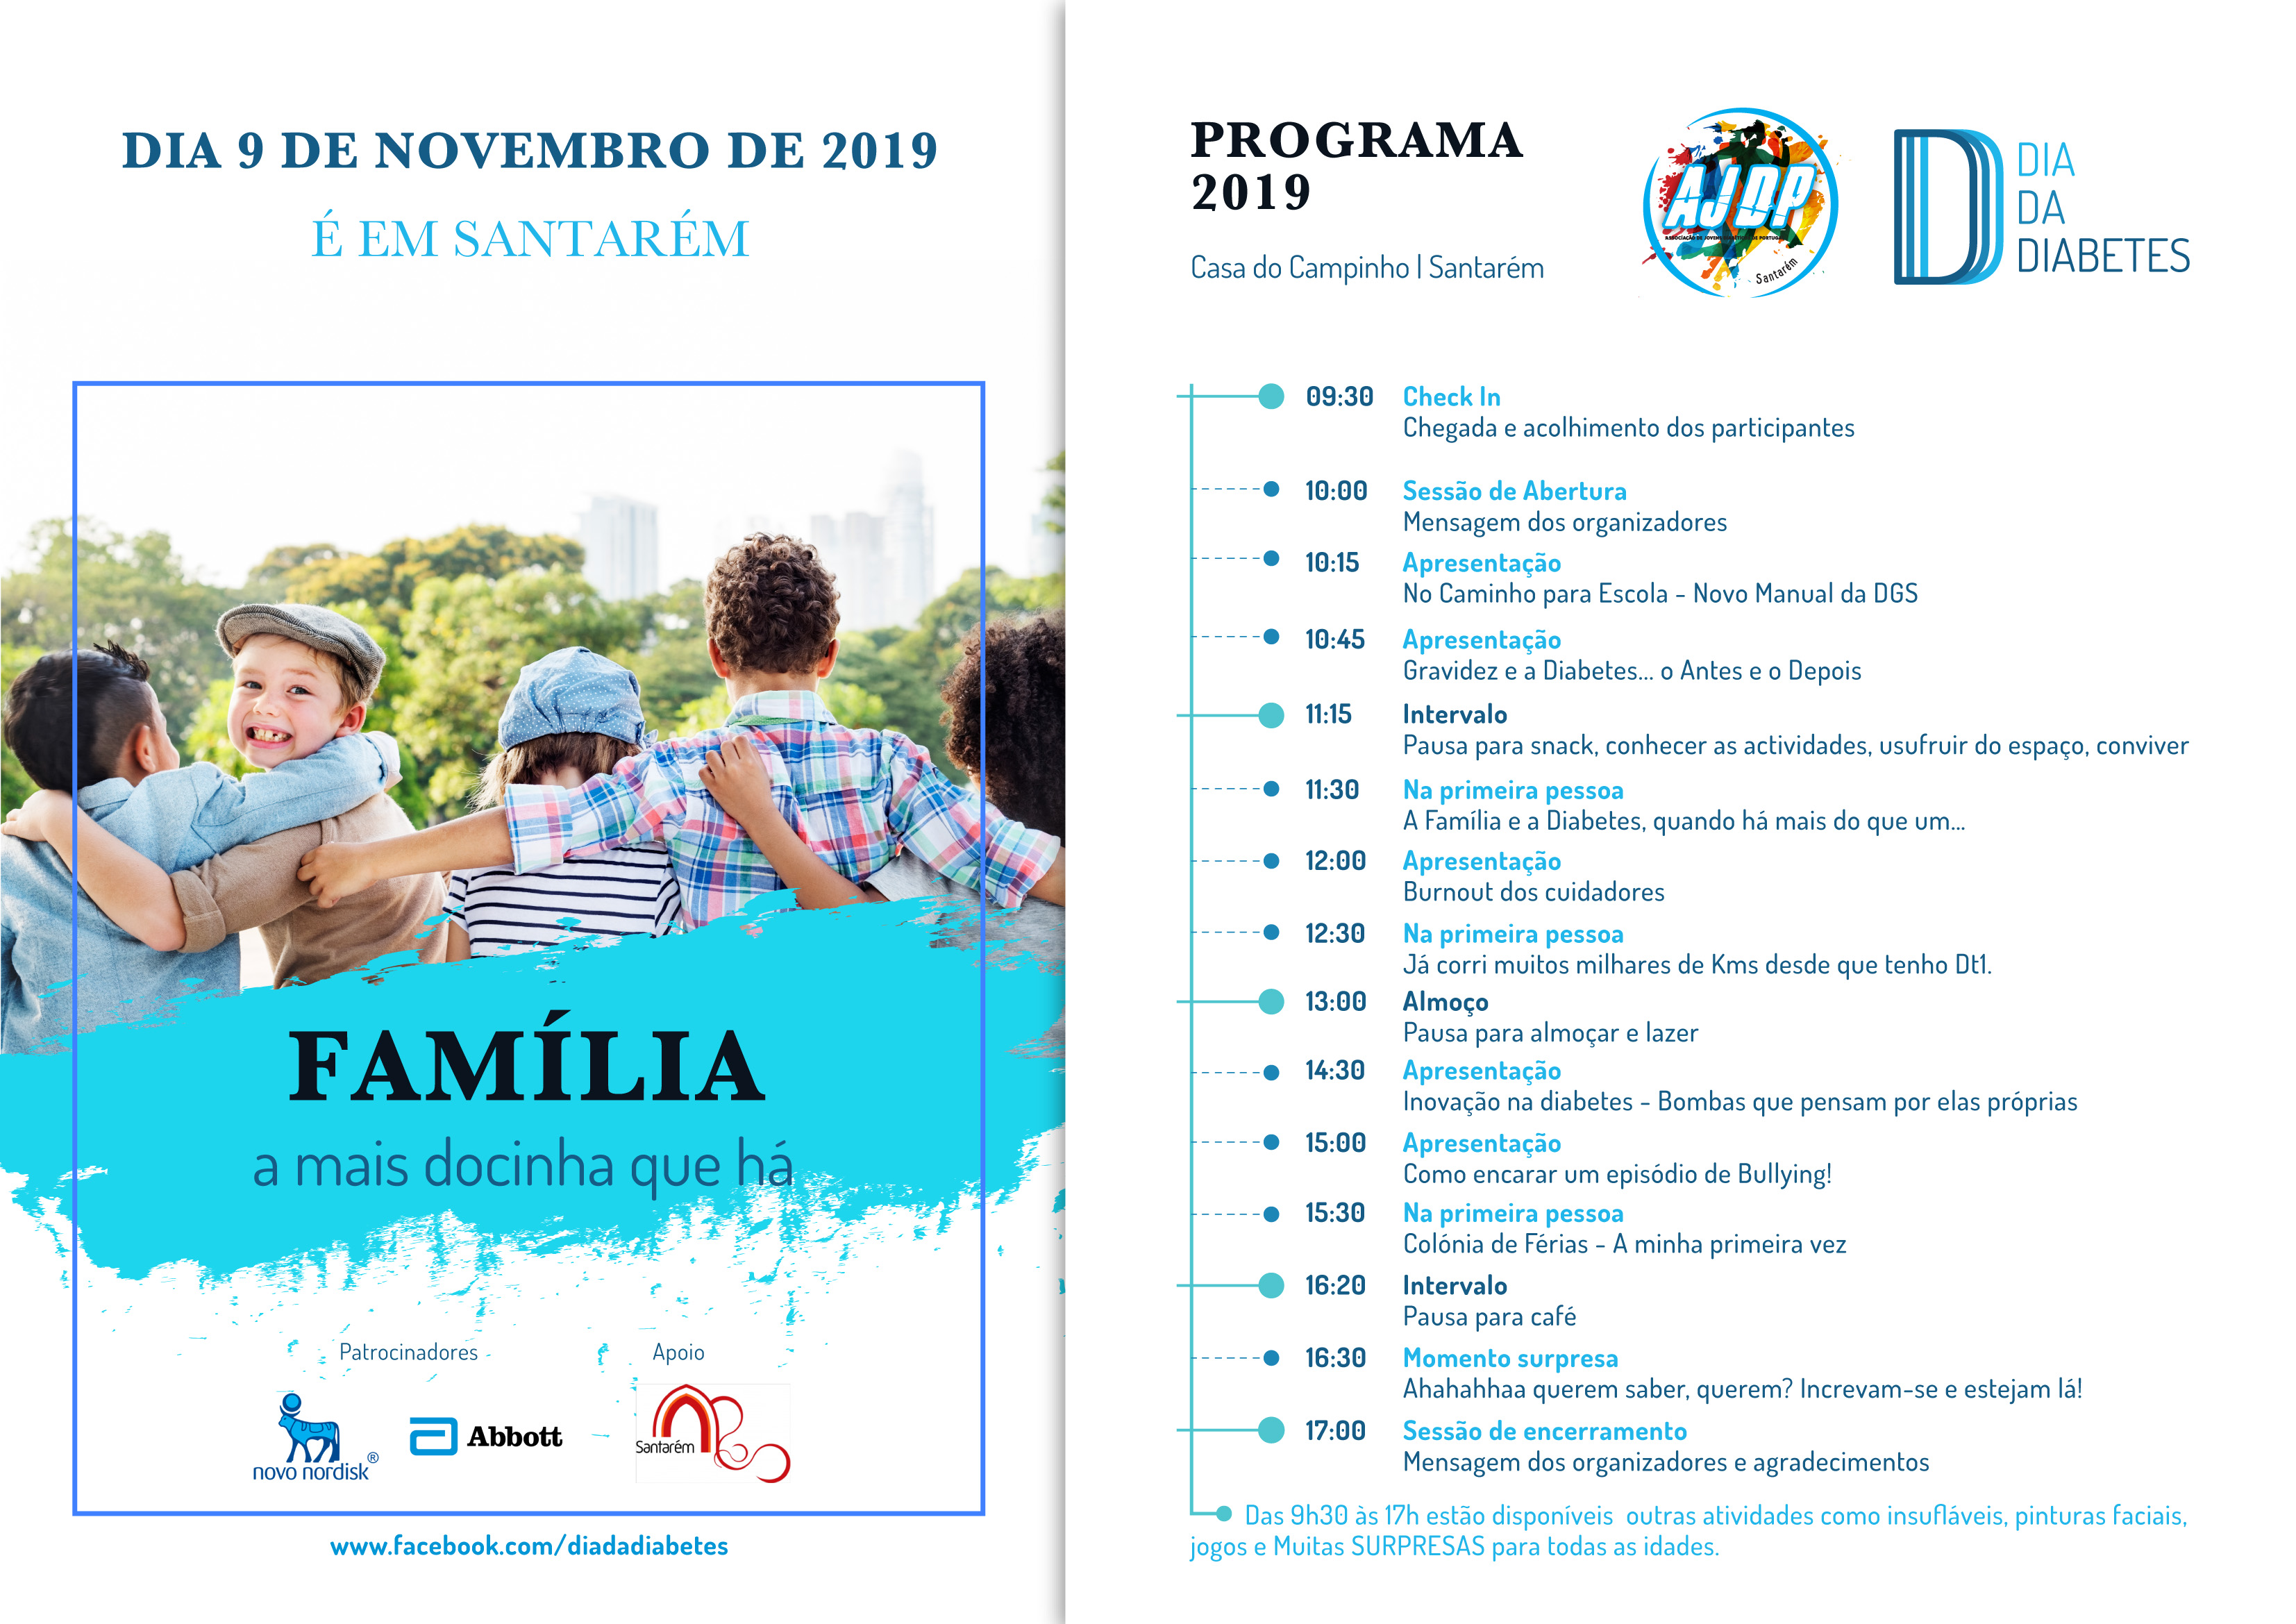 Associação de Jovens Diabéticos de Portugal destaca a importância da família, em evento do Dia Mundial da Diabetes